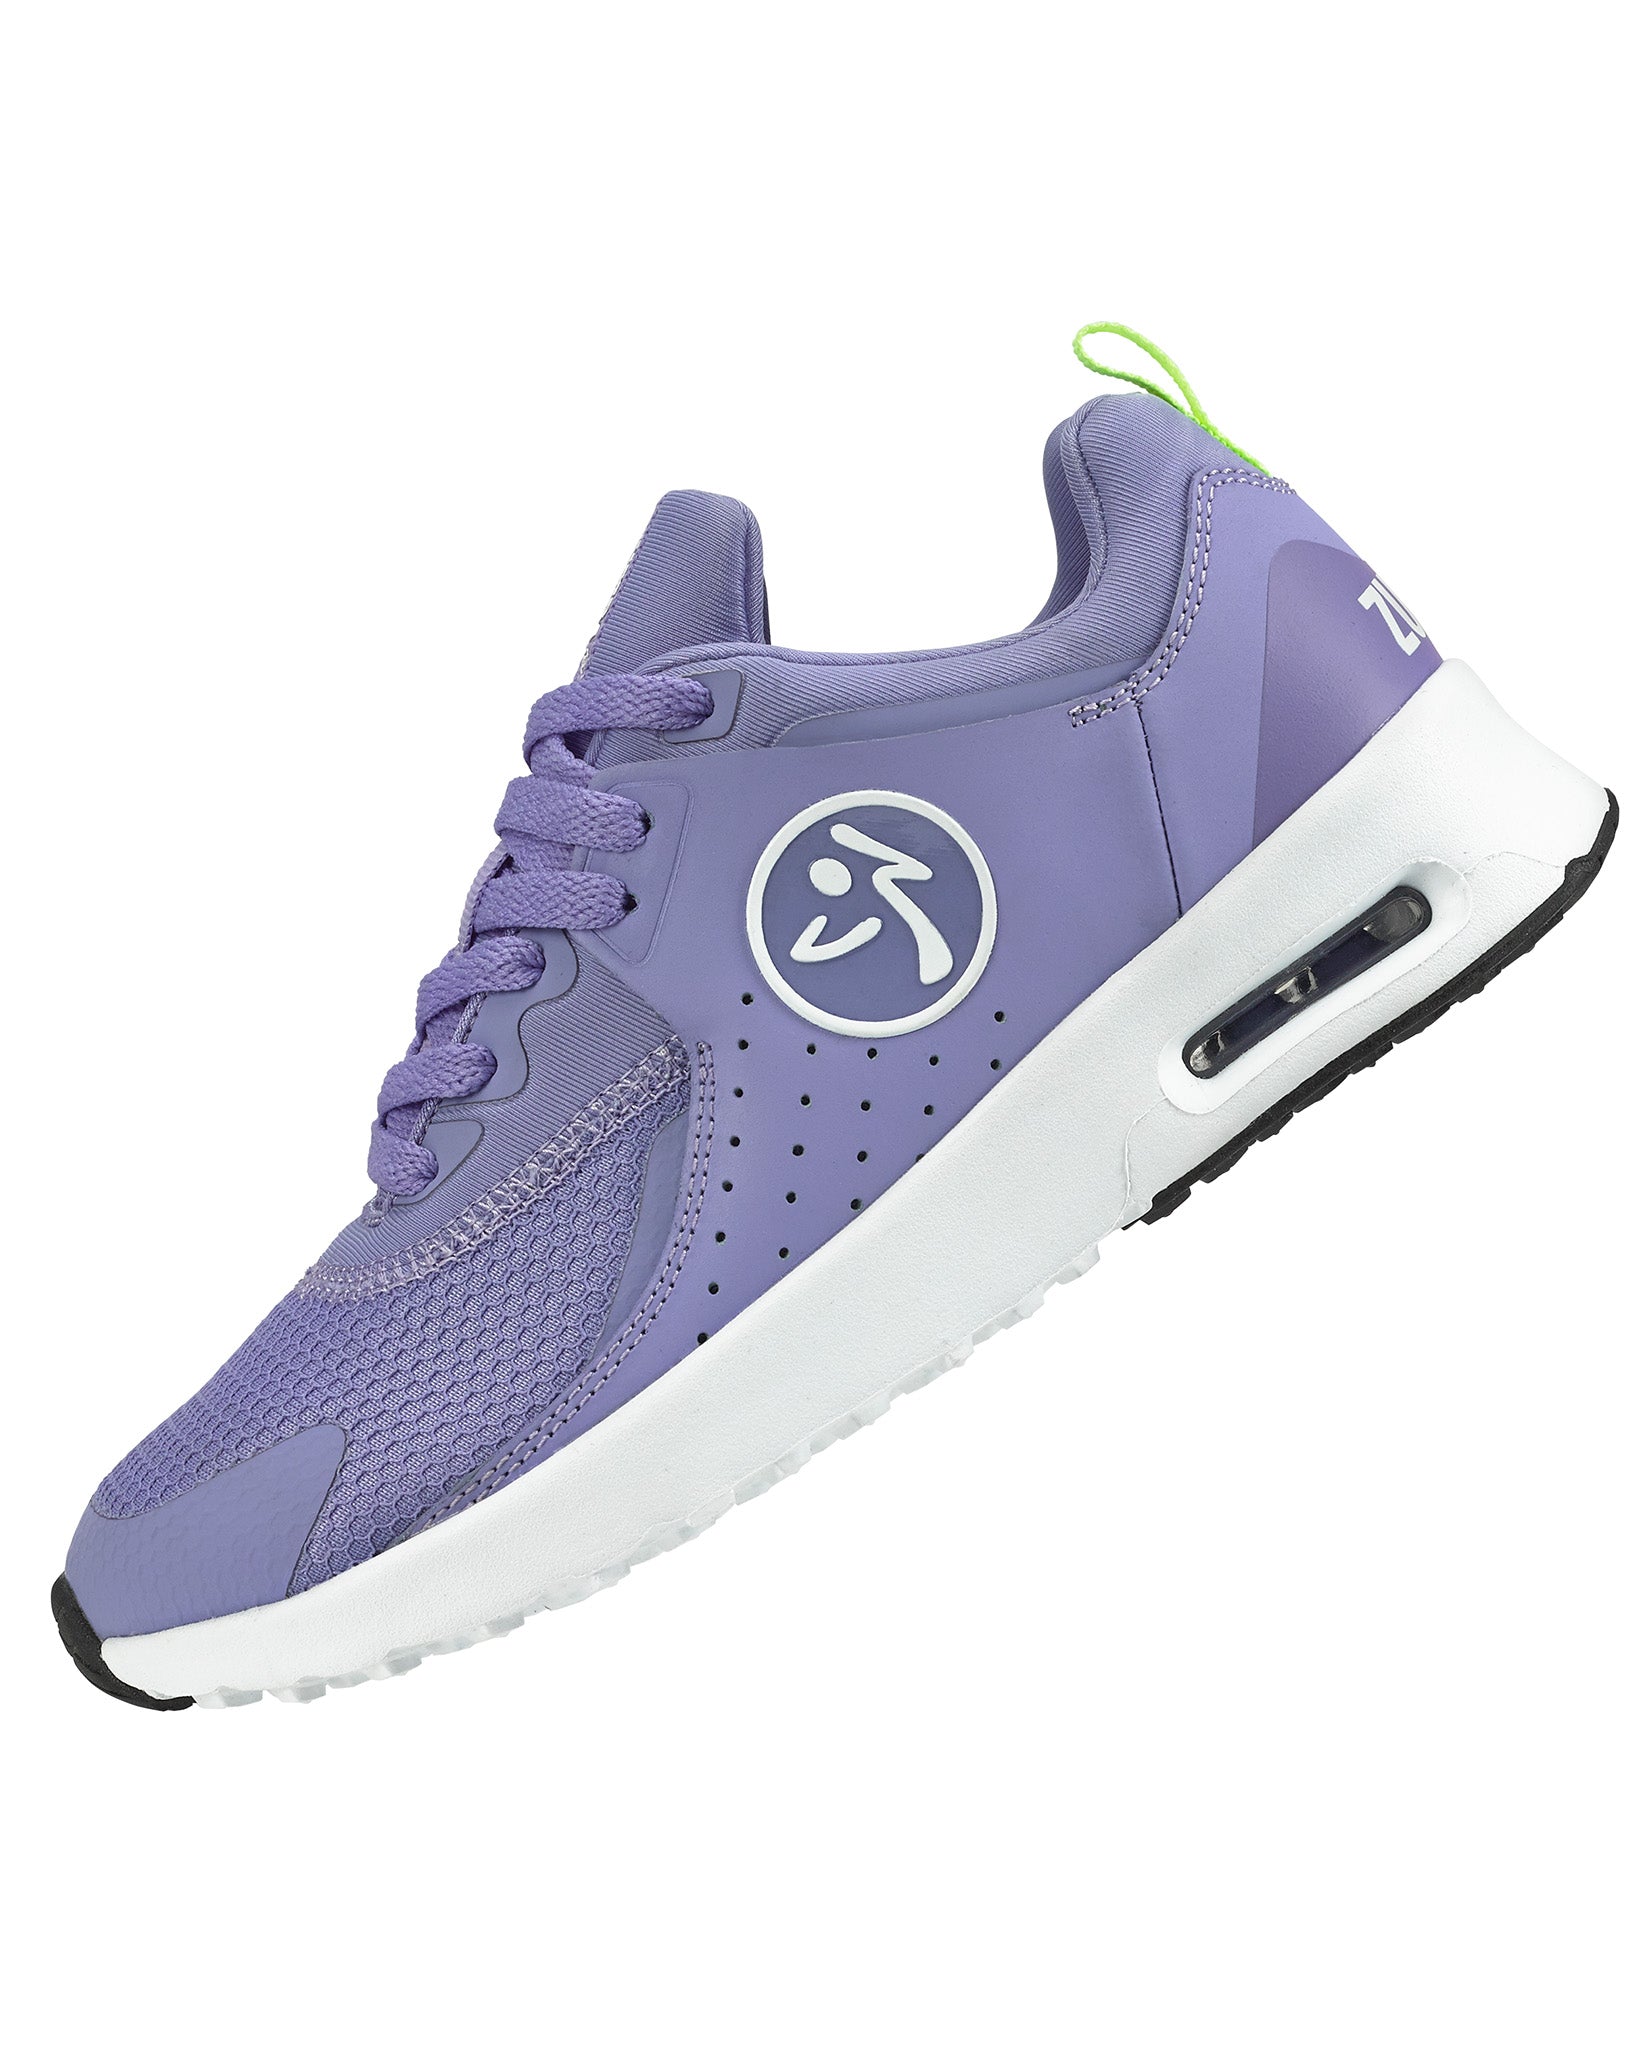 Keep Up The Energy Purple/Blue Sneakers - SHO2562PU 7